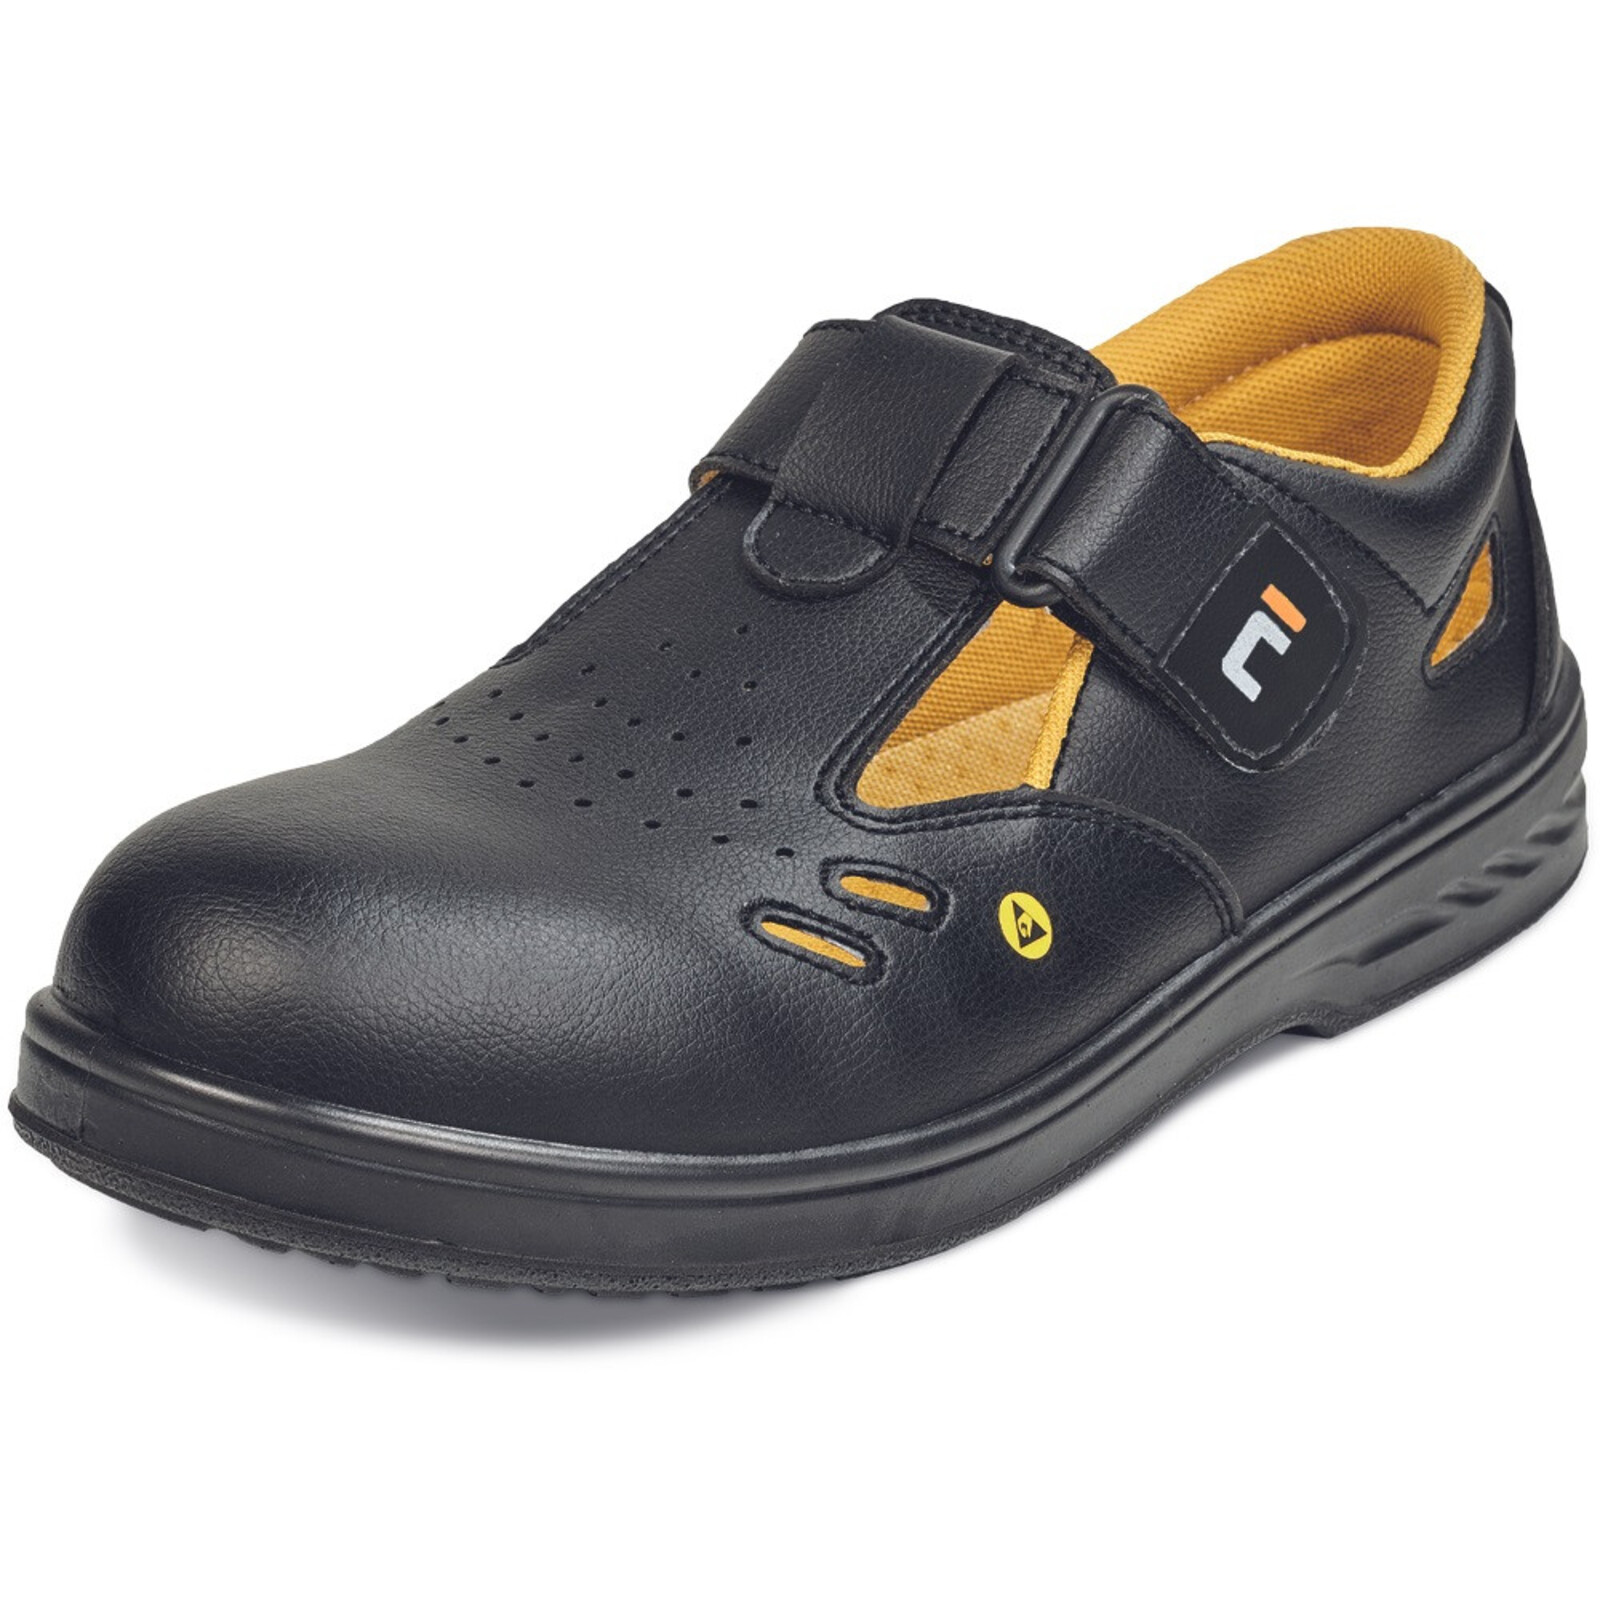 Bezpečnostné sandále Raven MF ESD S1 SRC - veľkosť: 38, farba: čierna